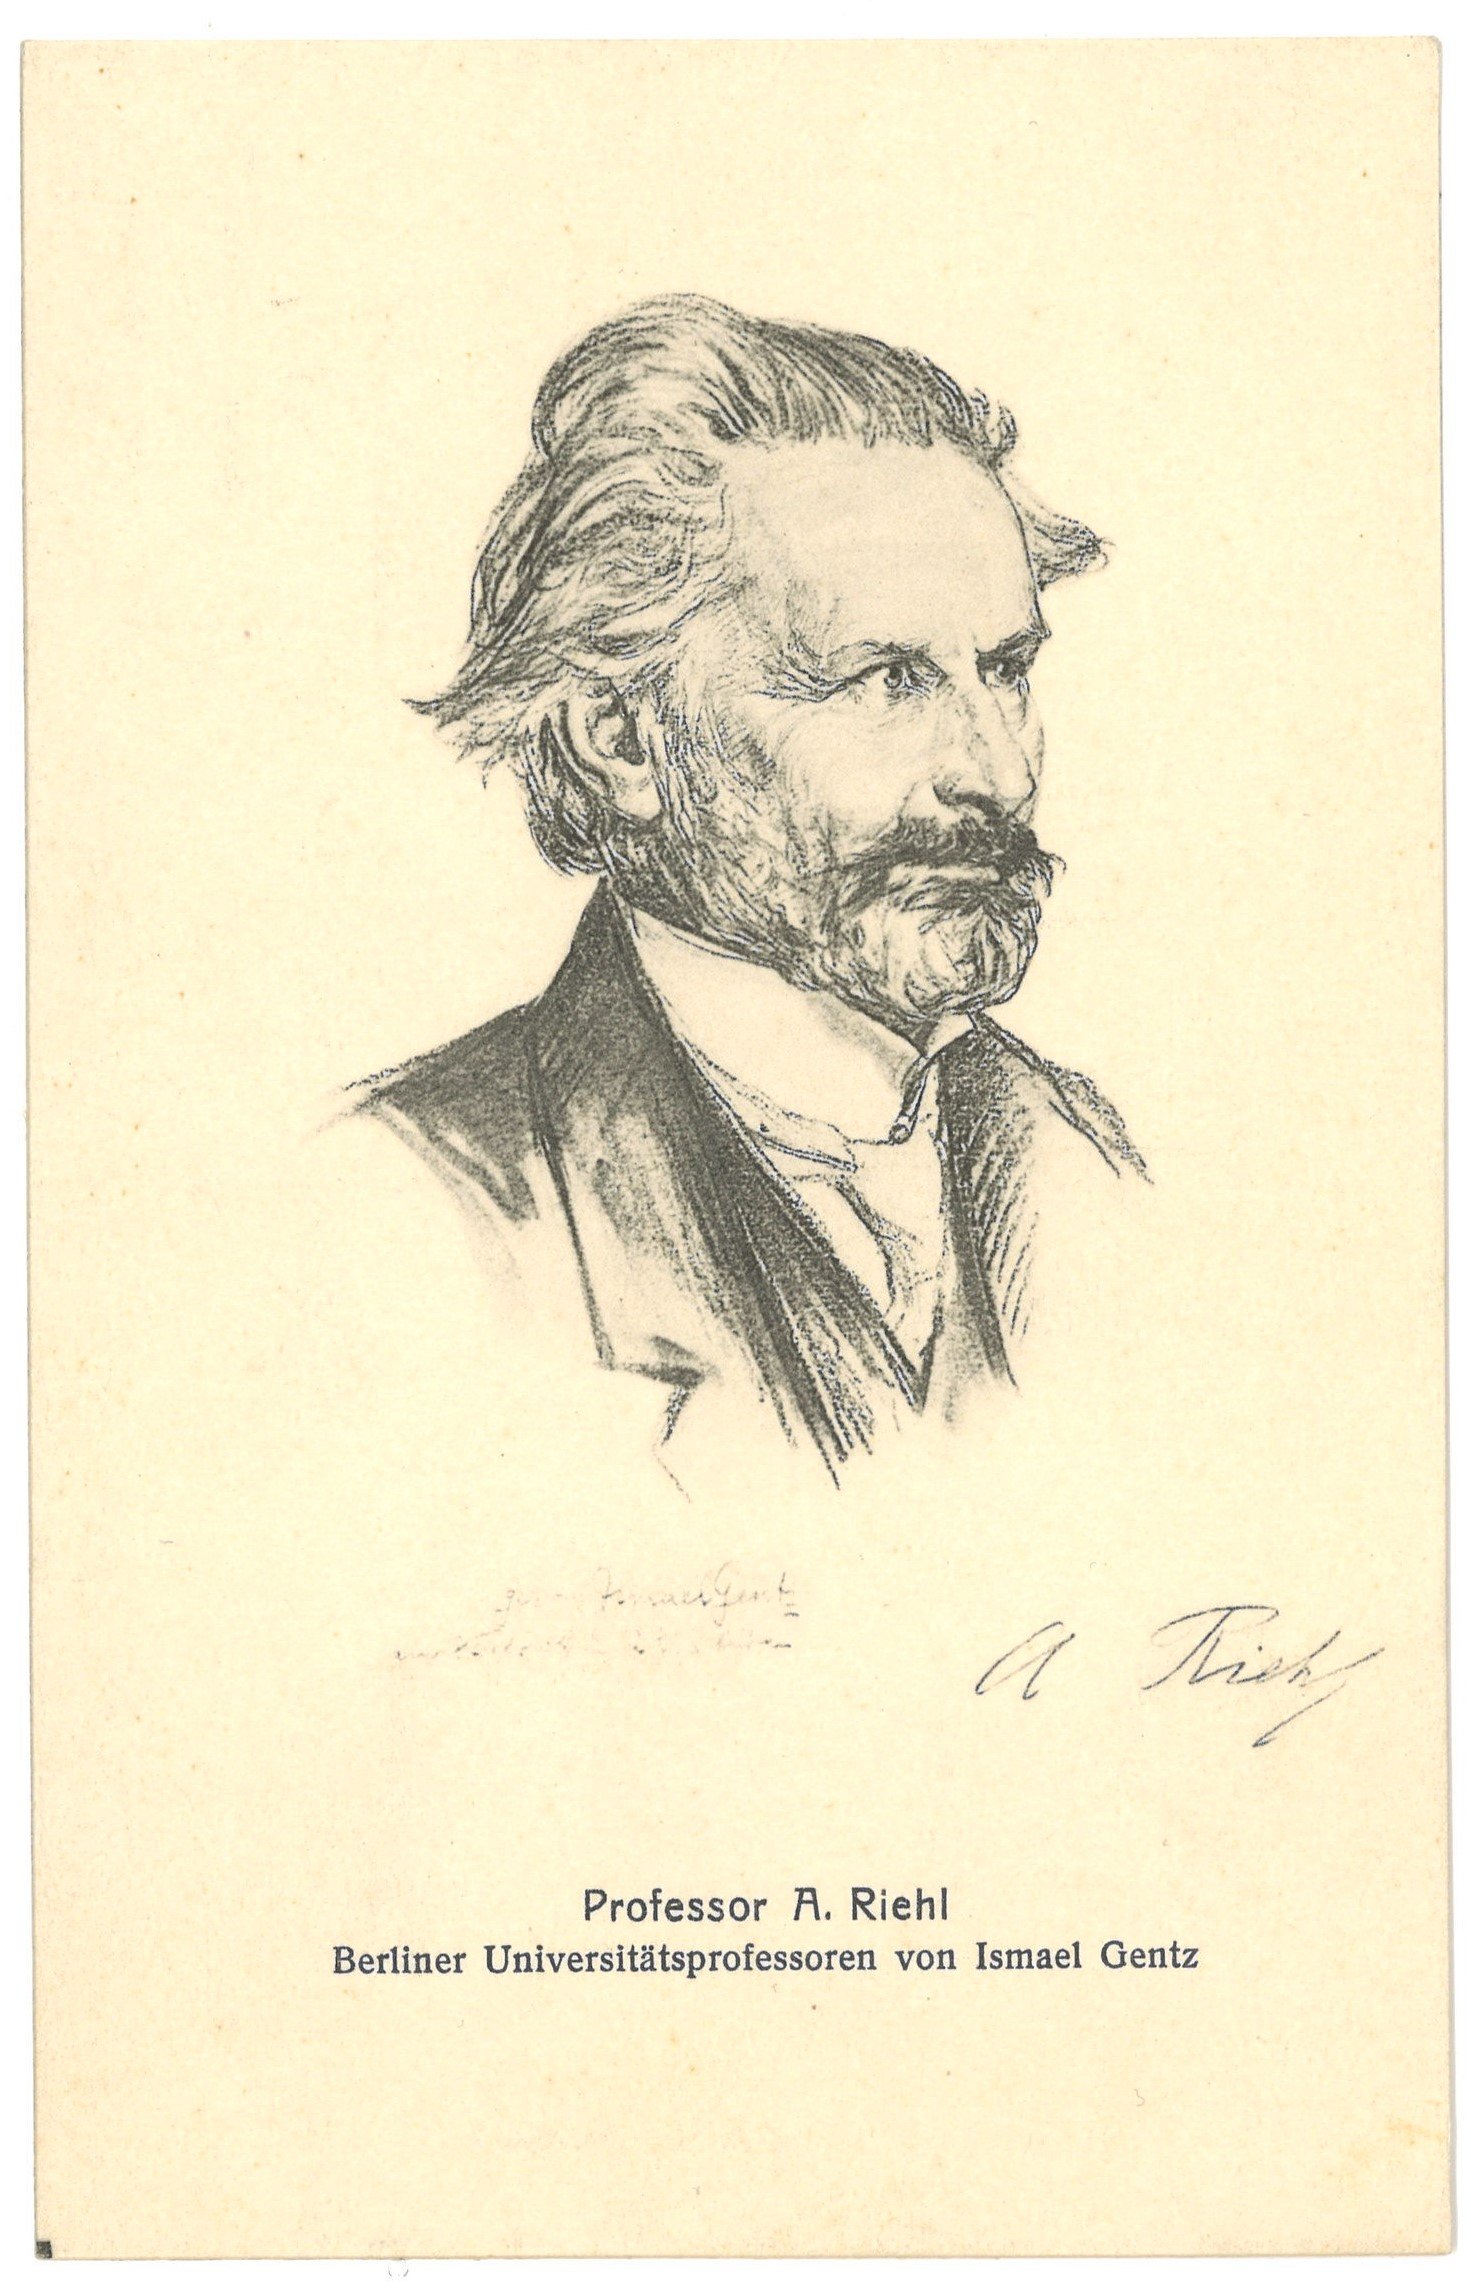 Riehl, Alois (1844–1924), Philosoph (Zeichnung von Ismael Gentz) (Landesgeschichtliche Vereinigung für die Mark Brandenburg e.V. CC BY)